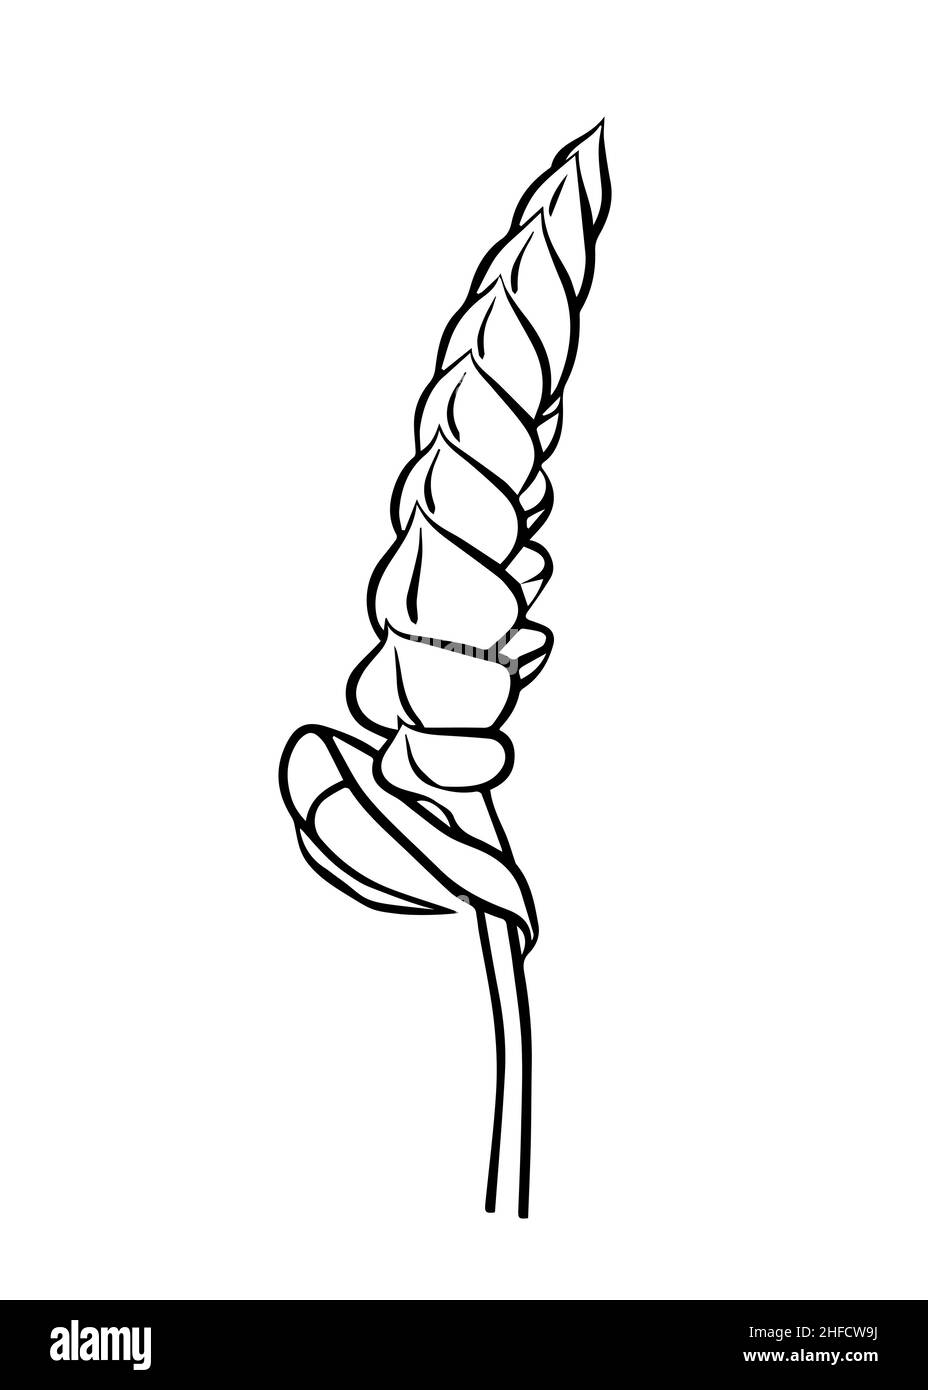 Dessin de contour d'une branche tillandsia Samantha.Clipart vecteur isolé.Conception botanique.Doodle. Illustration de Vecteur